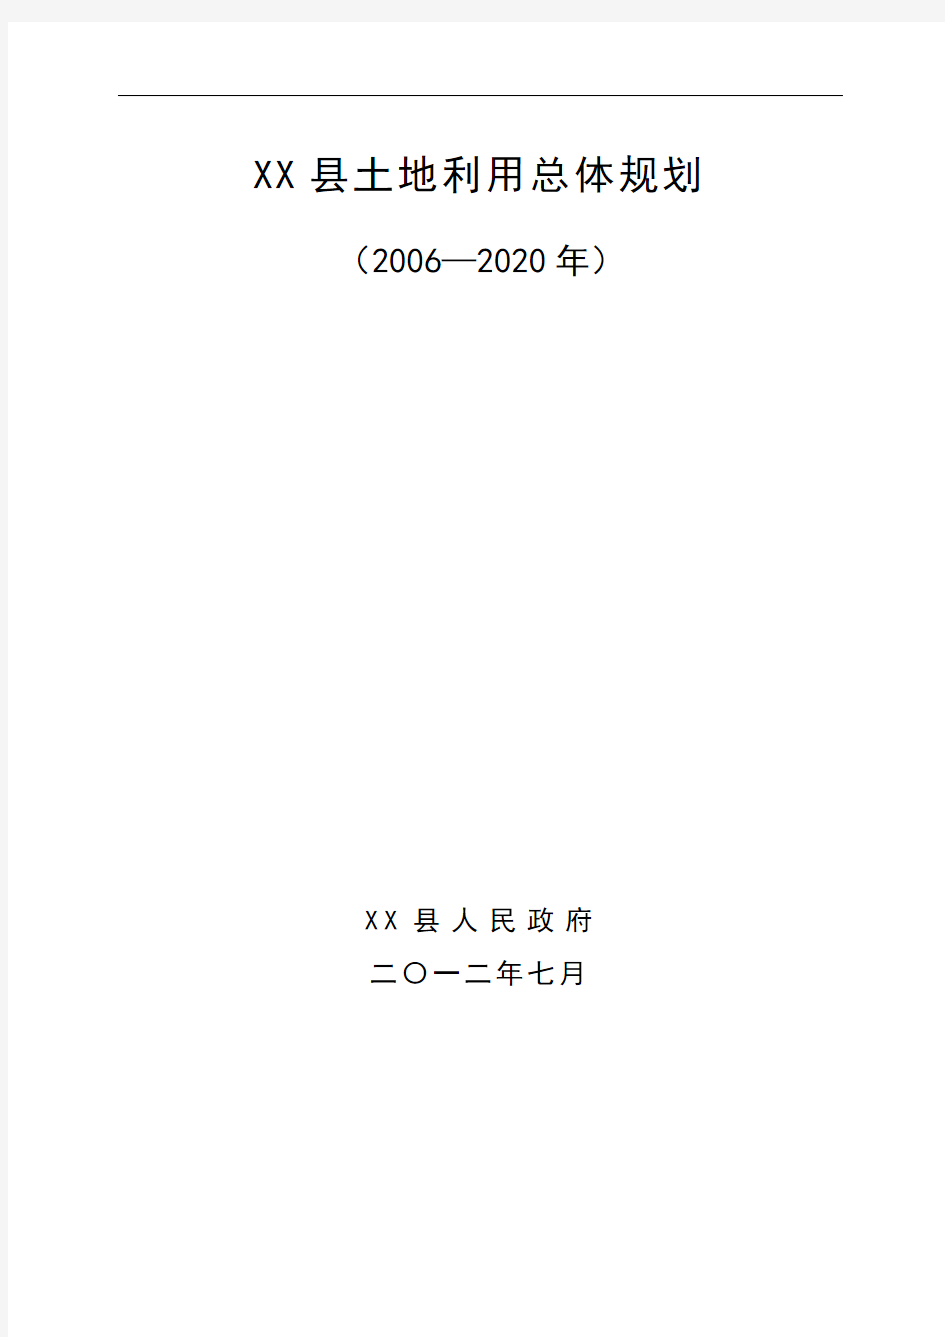 XX县土地利用总体规划(2006—2020年)【模板】